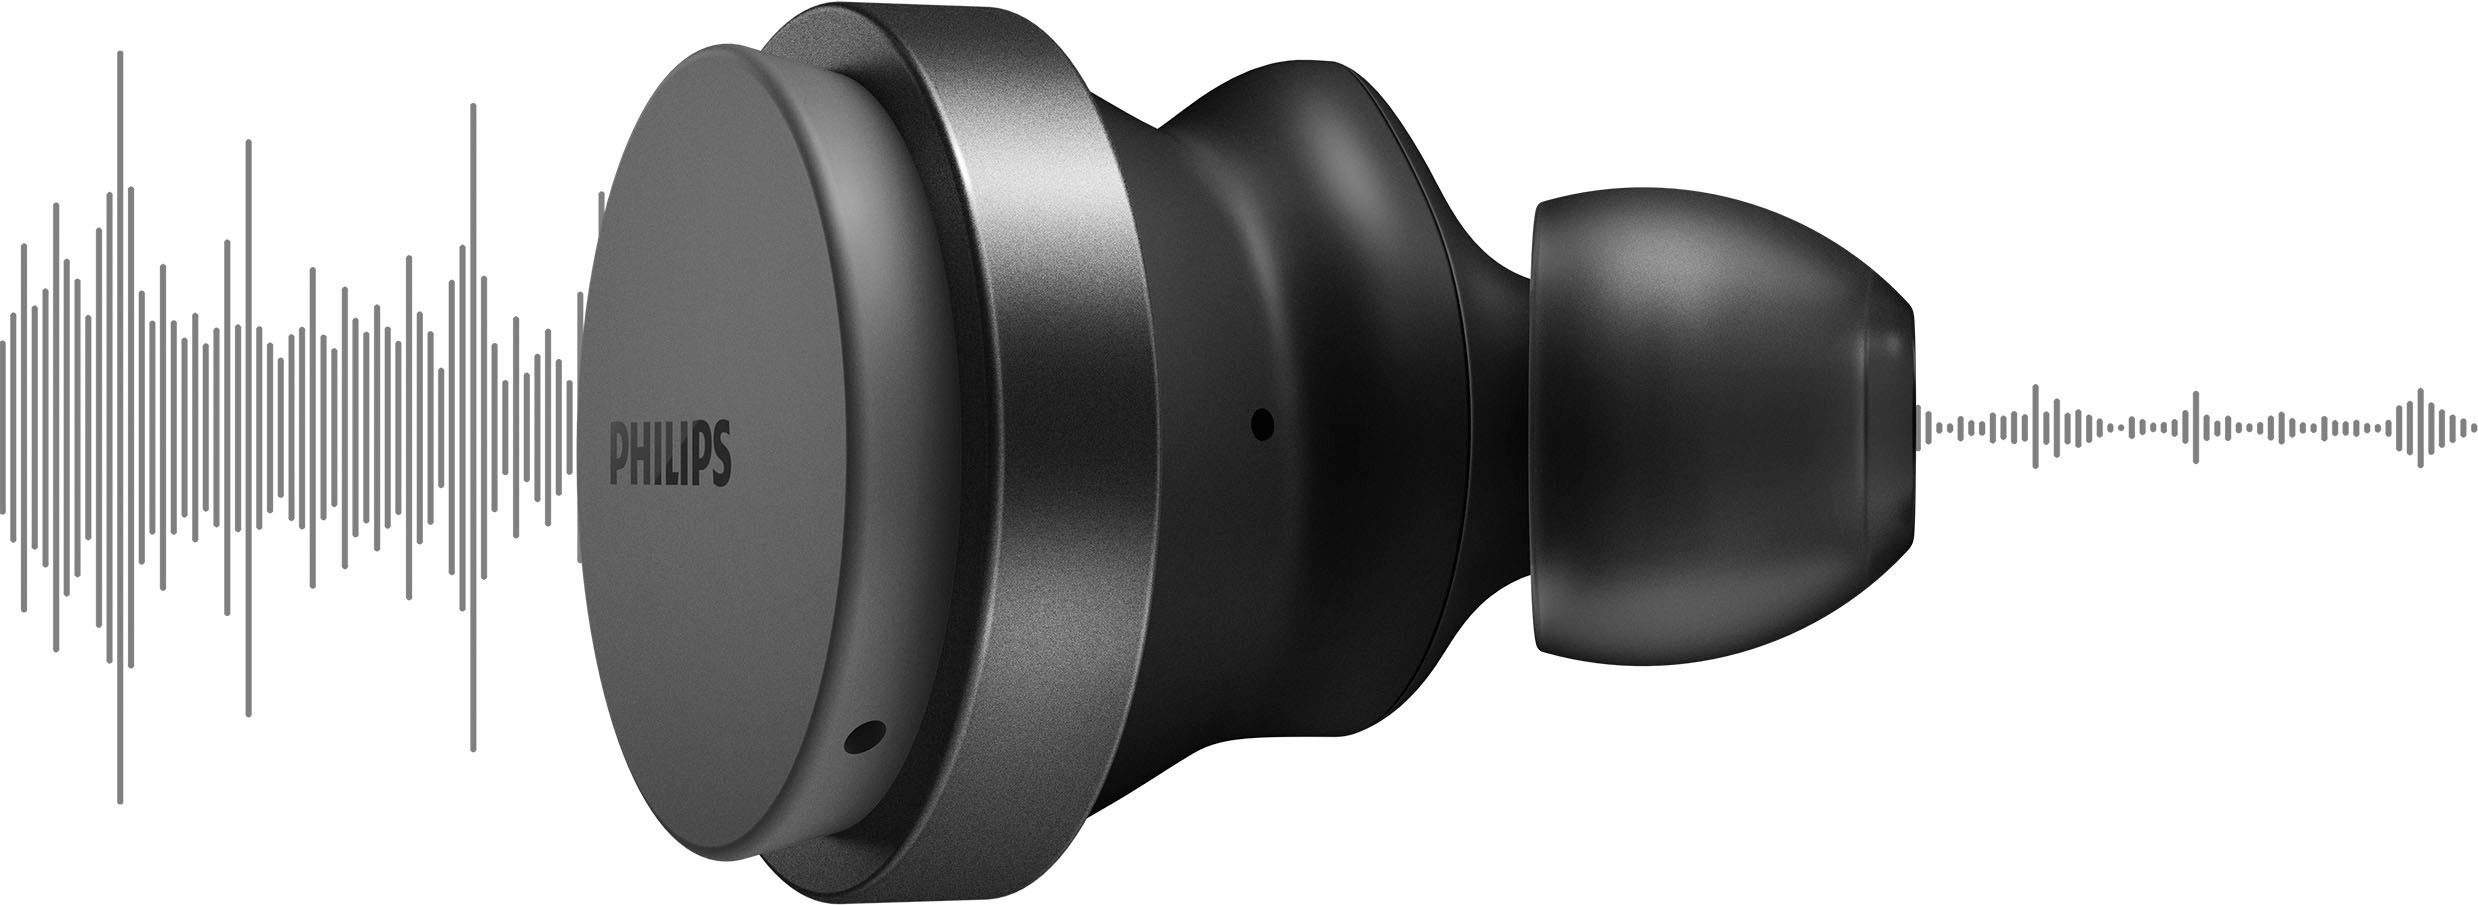 Steuerung (Noise-Cancelling A2DP Bluetooth, und AVRCP Pro, Wireless, wireless HFP) TAT8506 True integrierte Musik, Bluetooth, In-Ear-Kopfhörer Philips Anrufe schwarz für